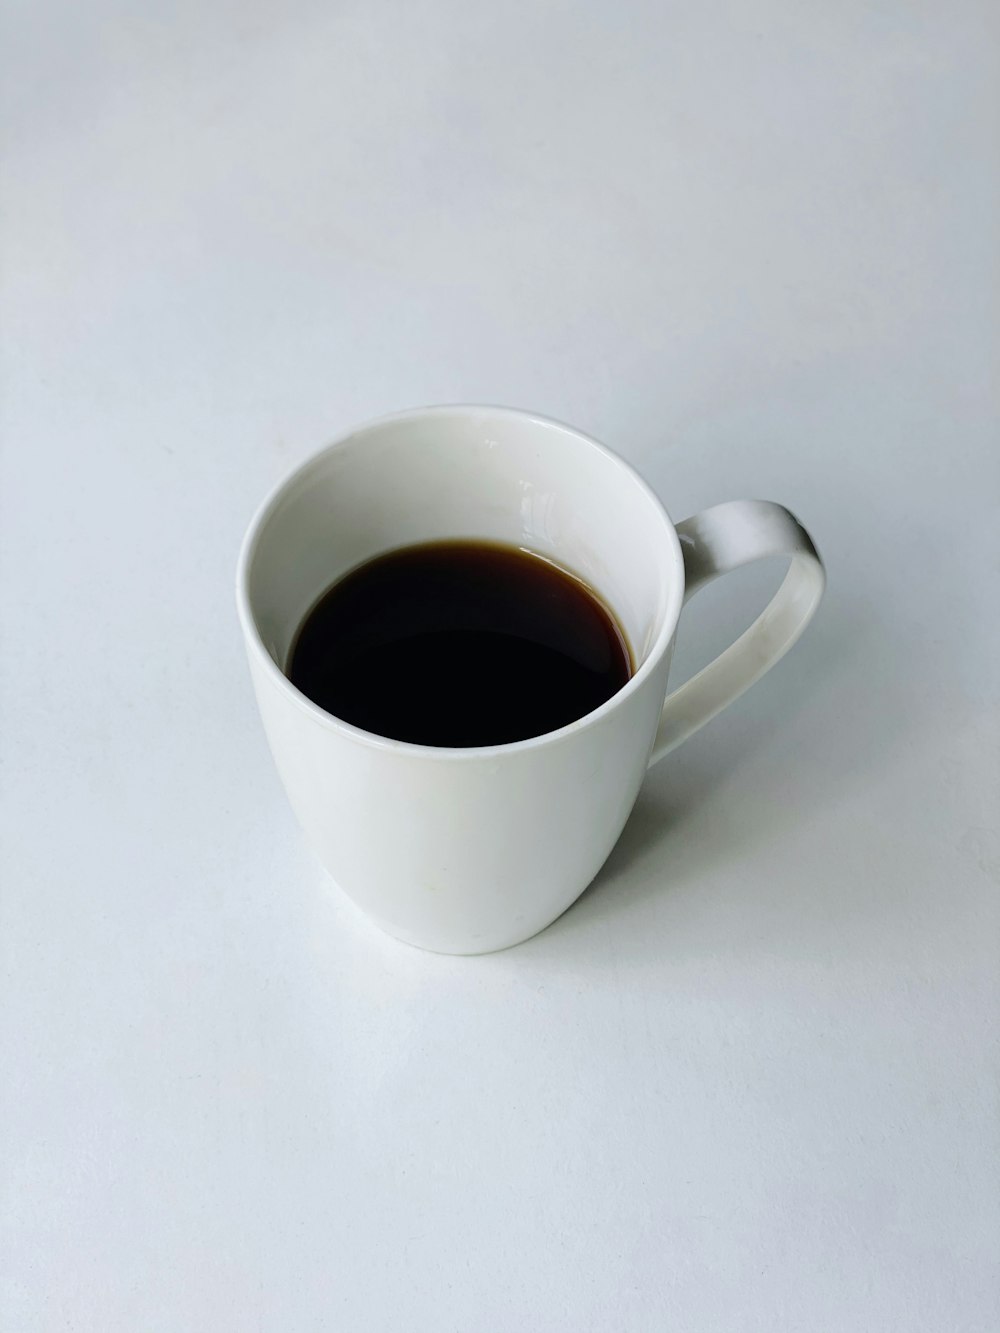 white ceramic mug with black liquid